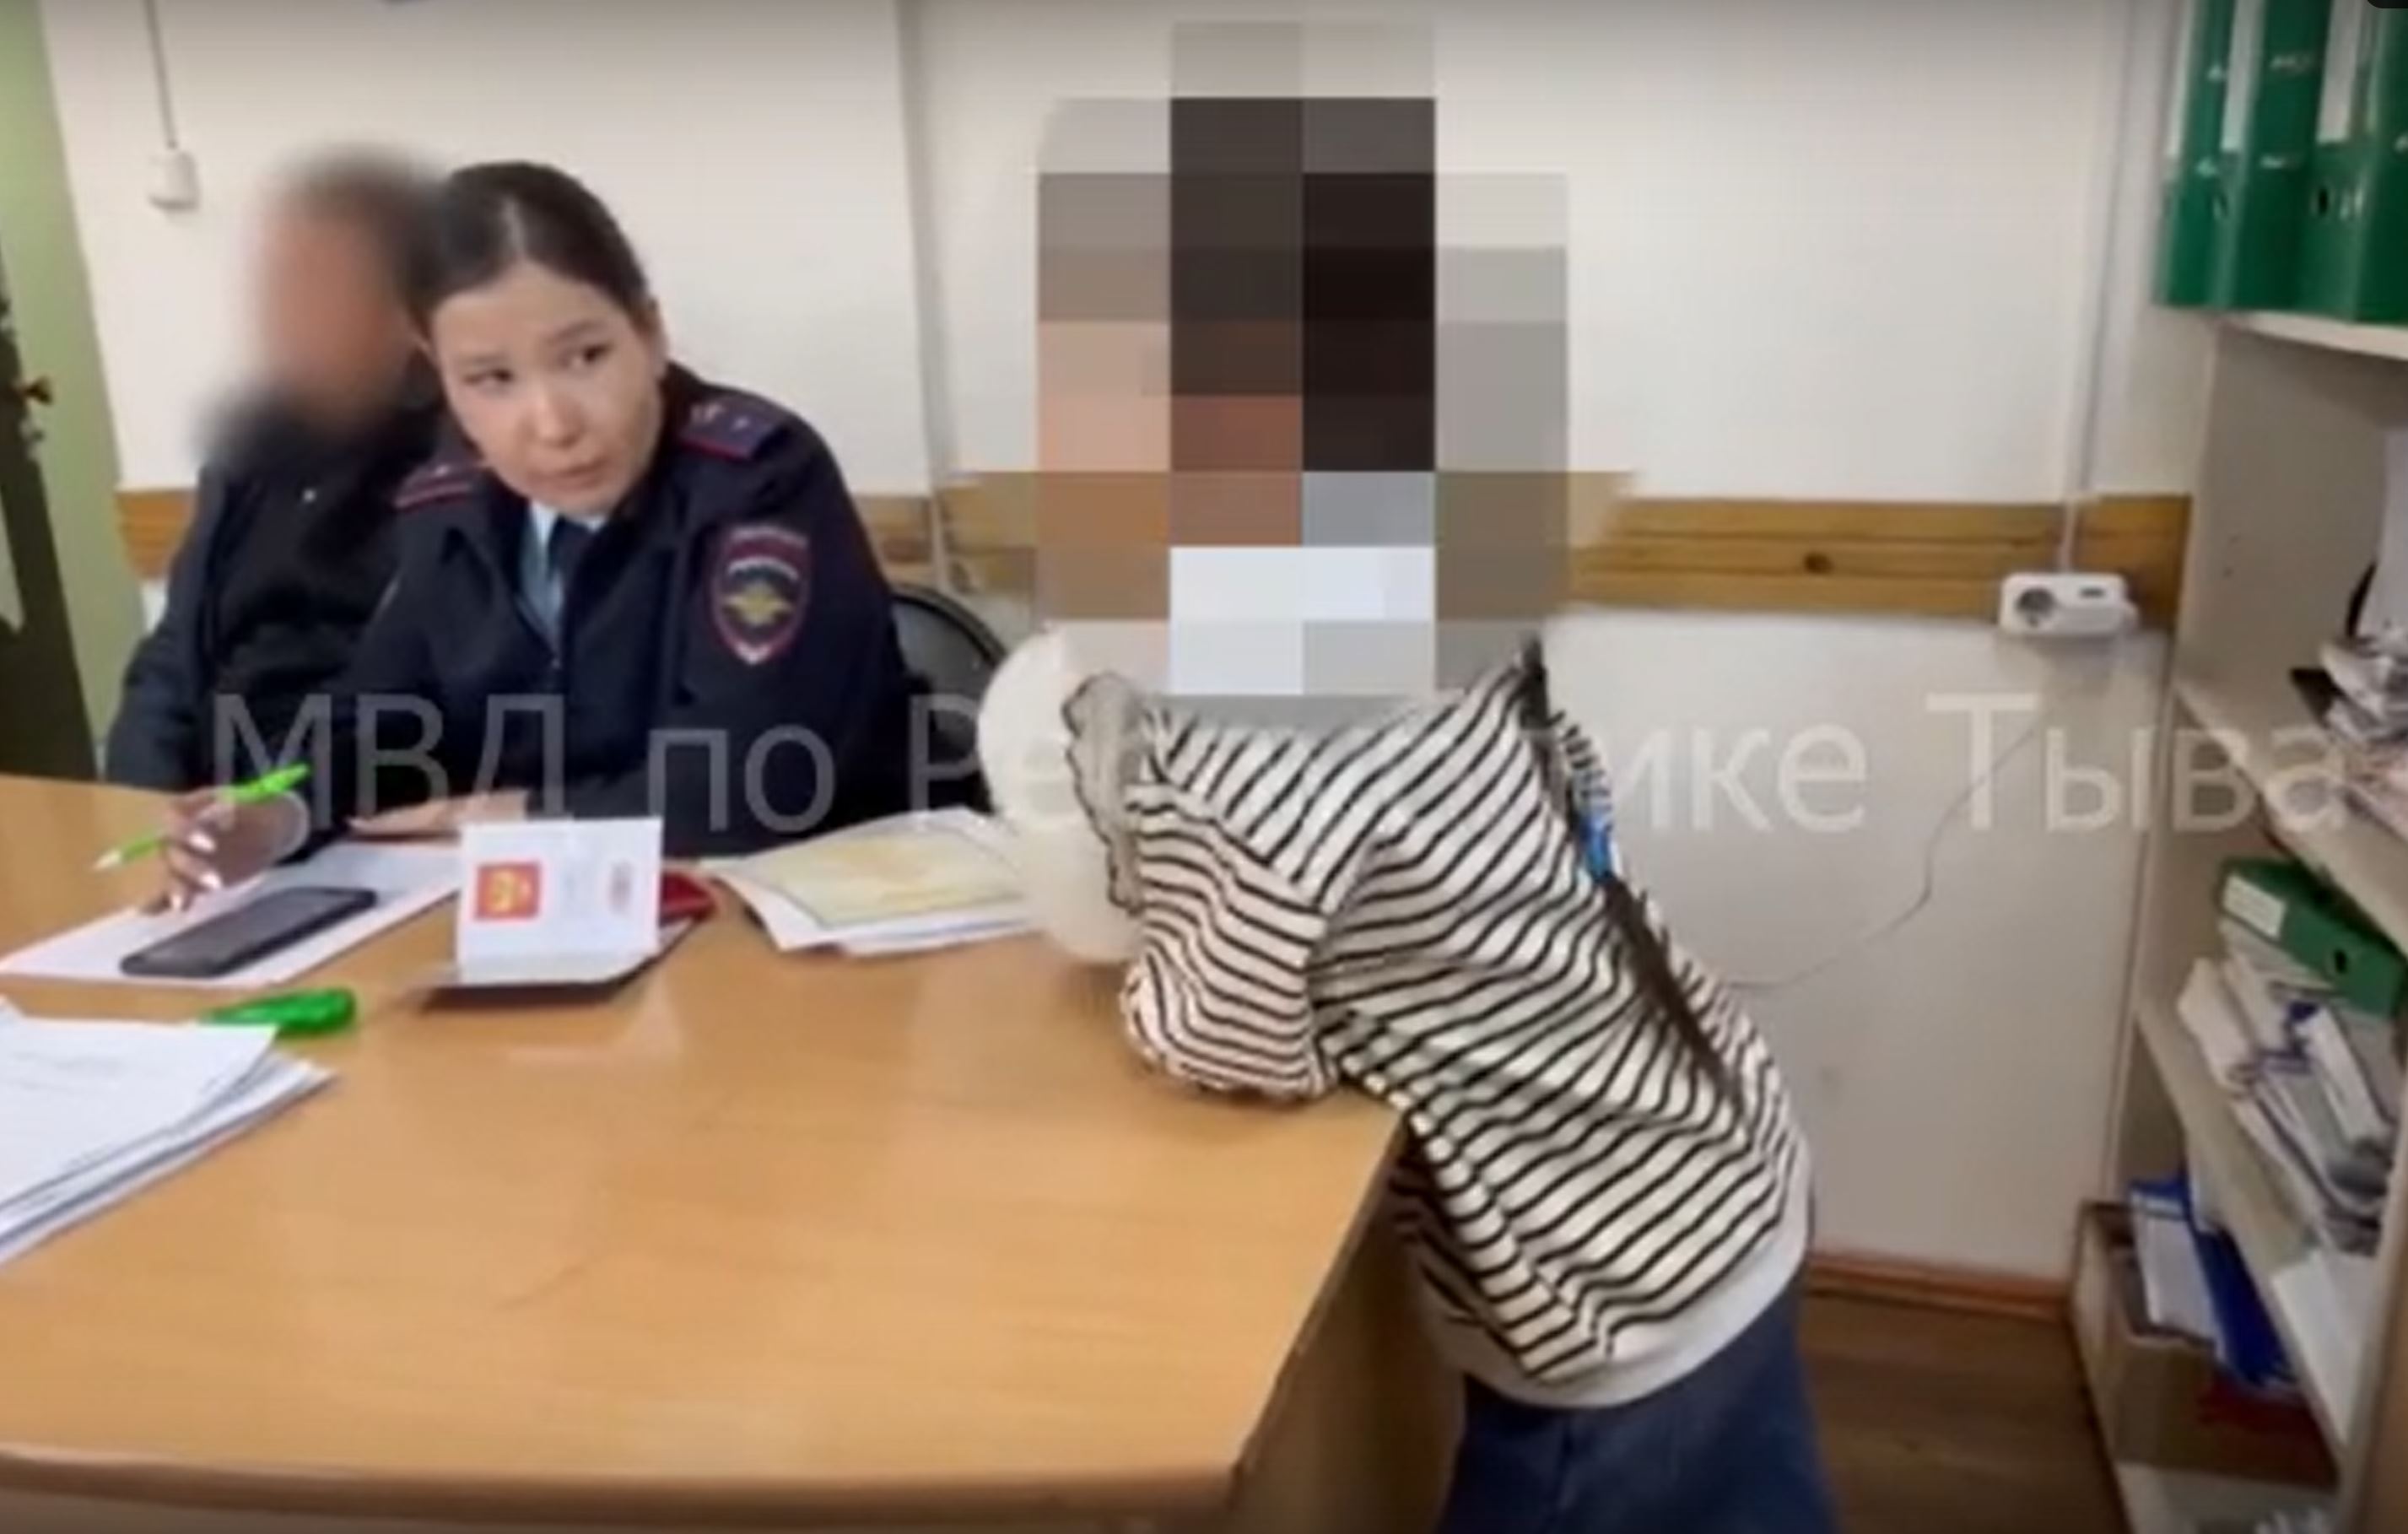 Полиция задержала 9-летнюю девочку за сообщение в мессенджере